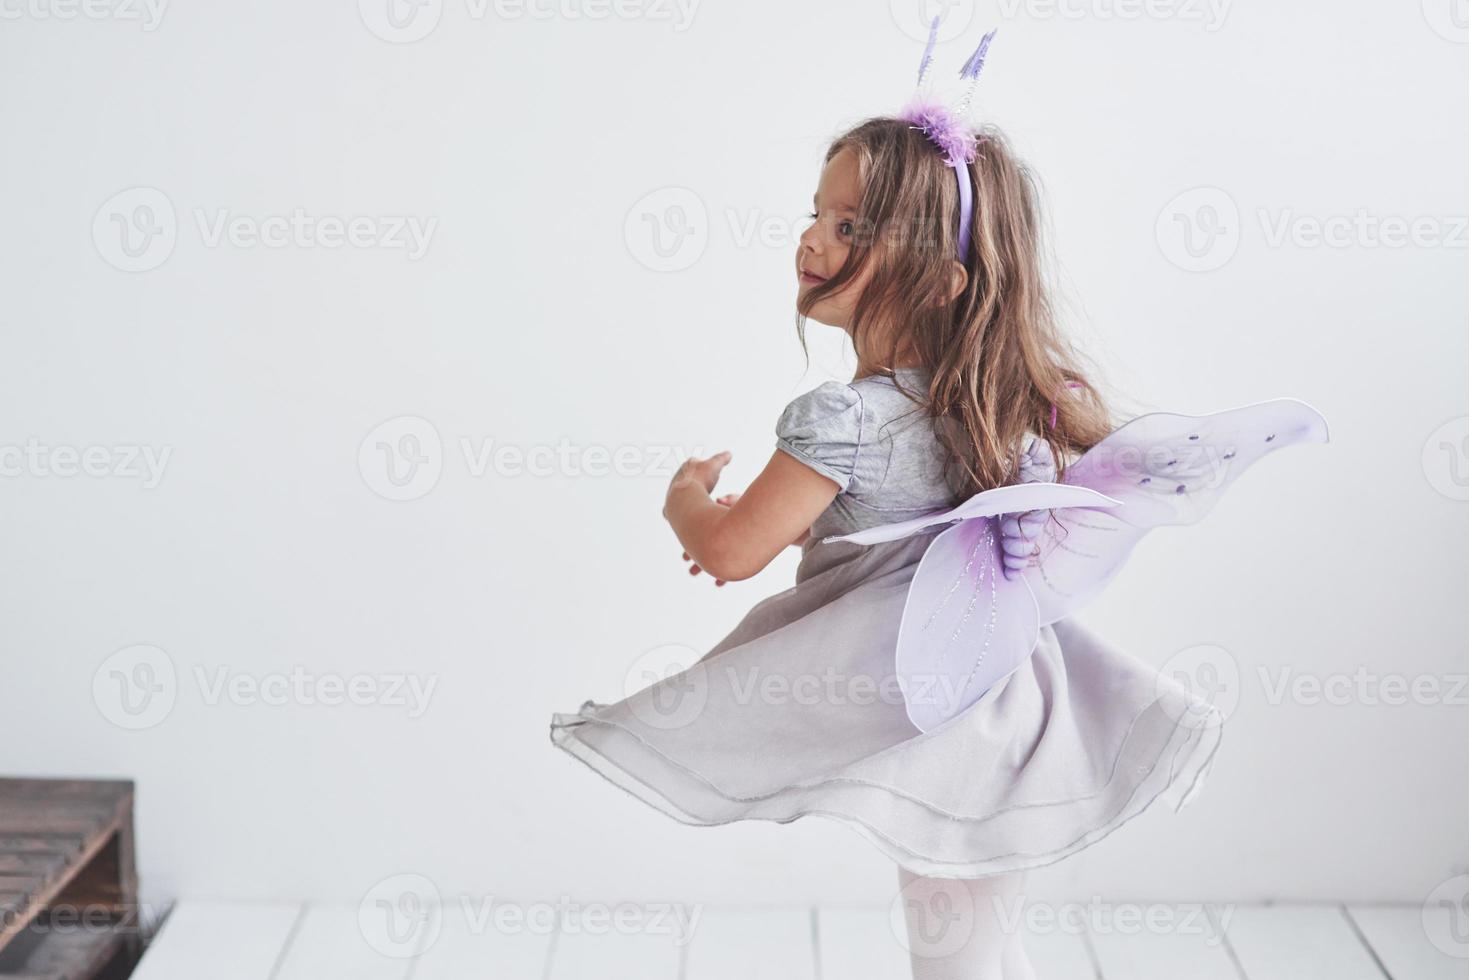 zich omdraaien en proberen te vliegen. mooi klein meisje in het sprookjeskostuum dat in de kamer staat met een witte achtergrond foto